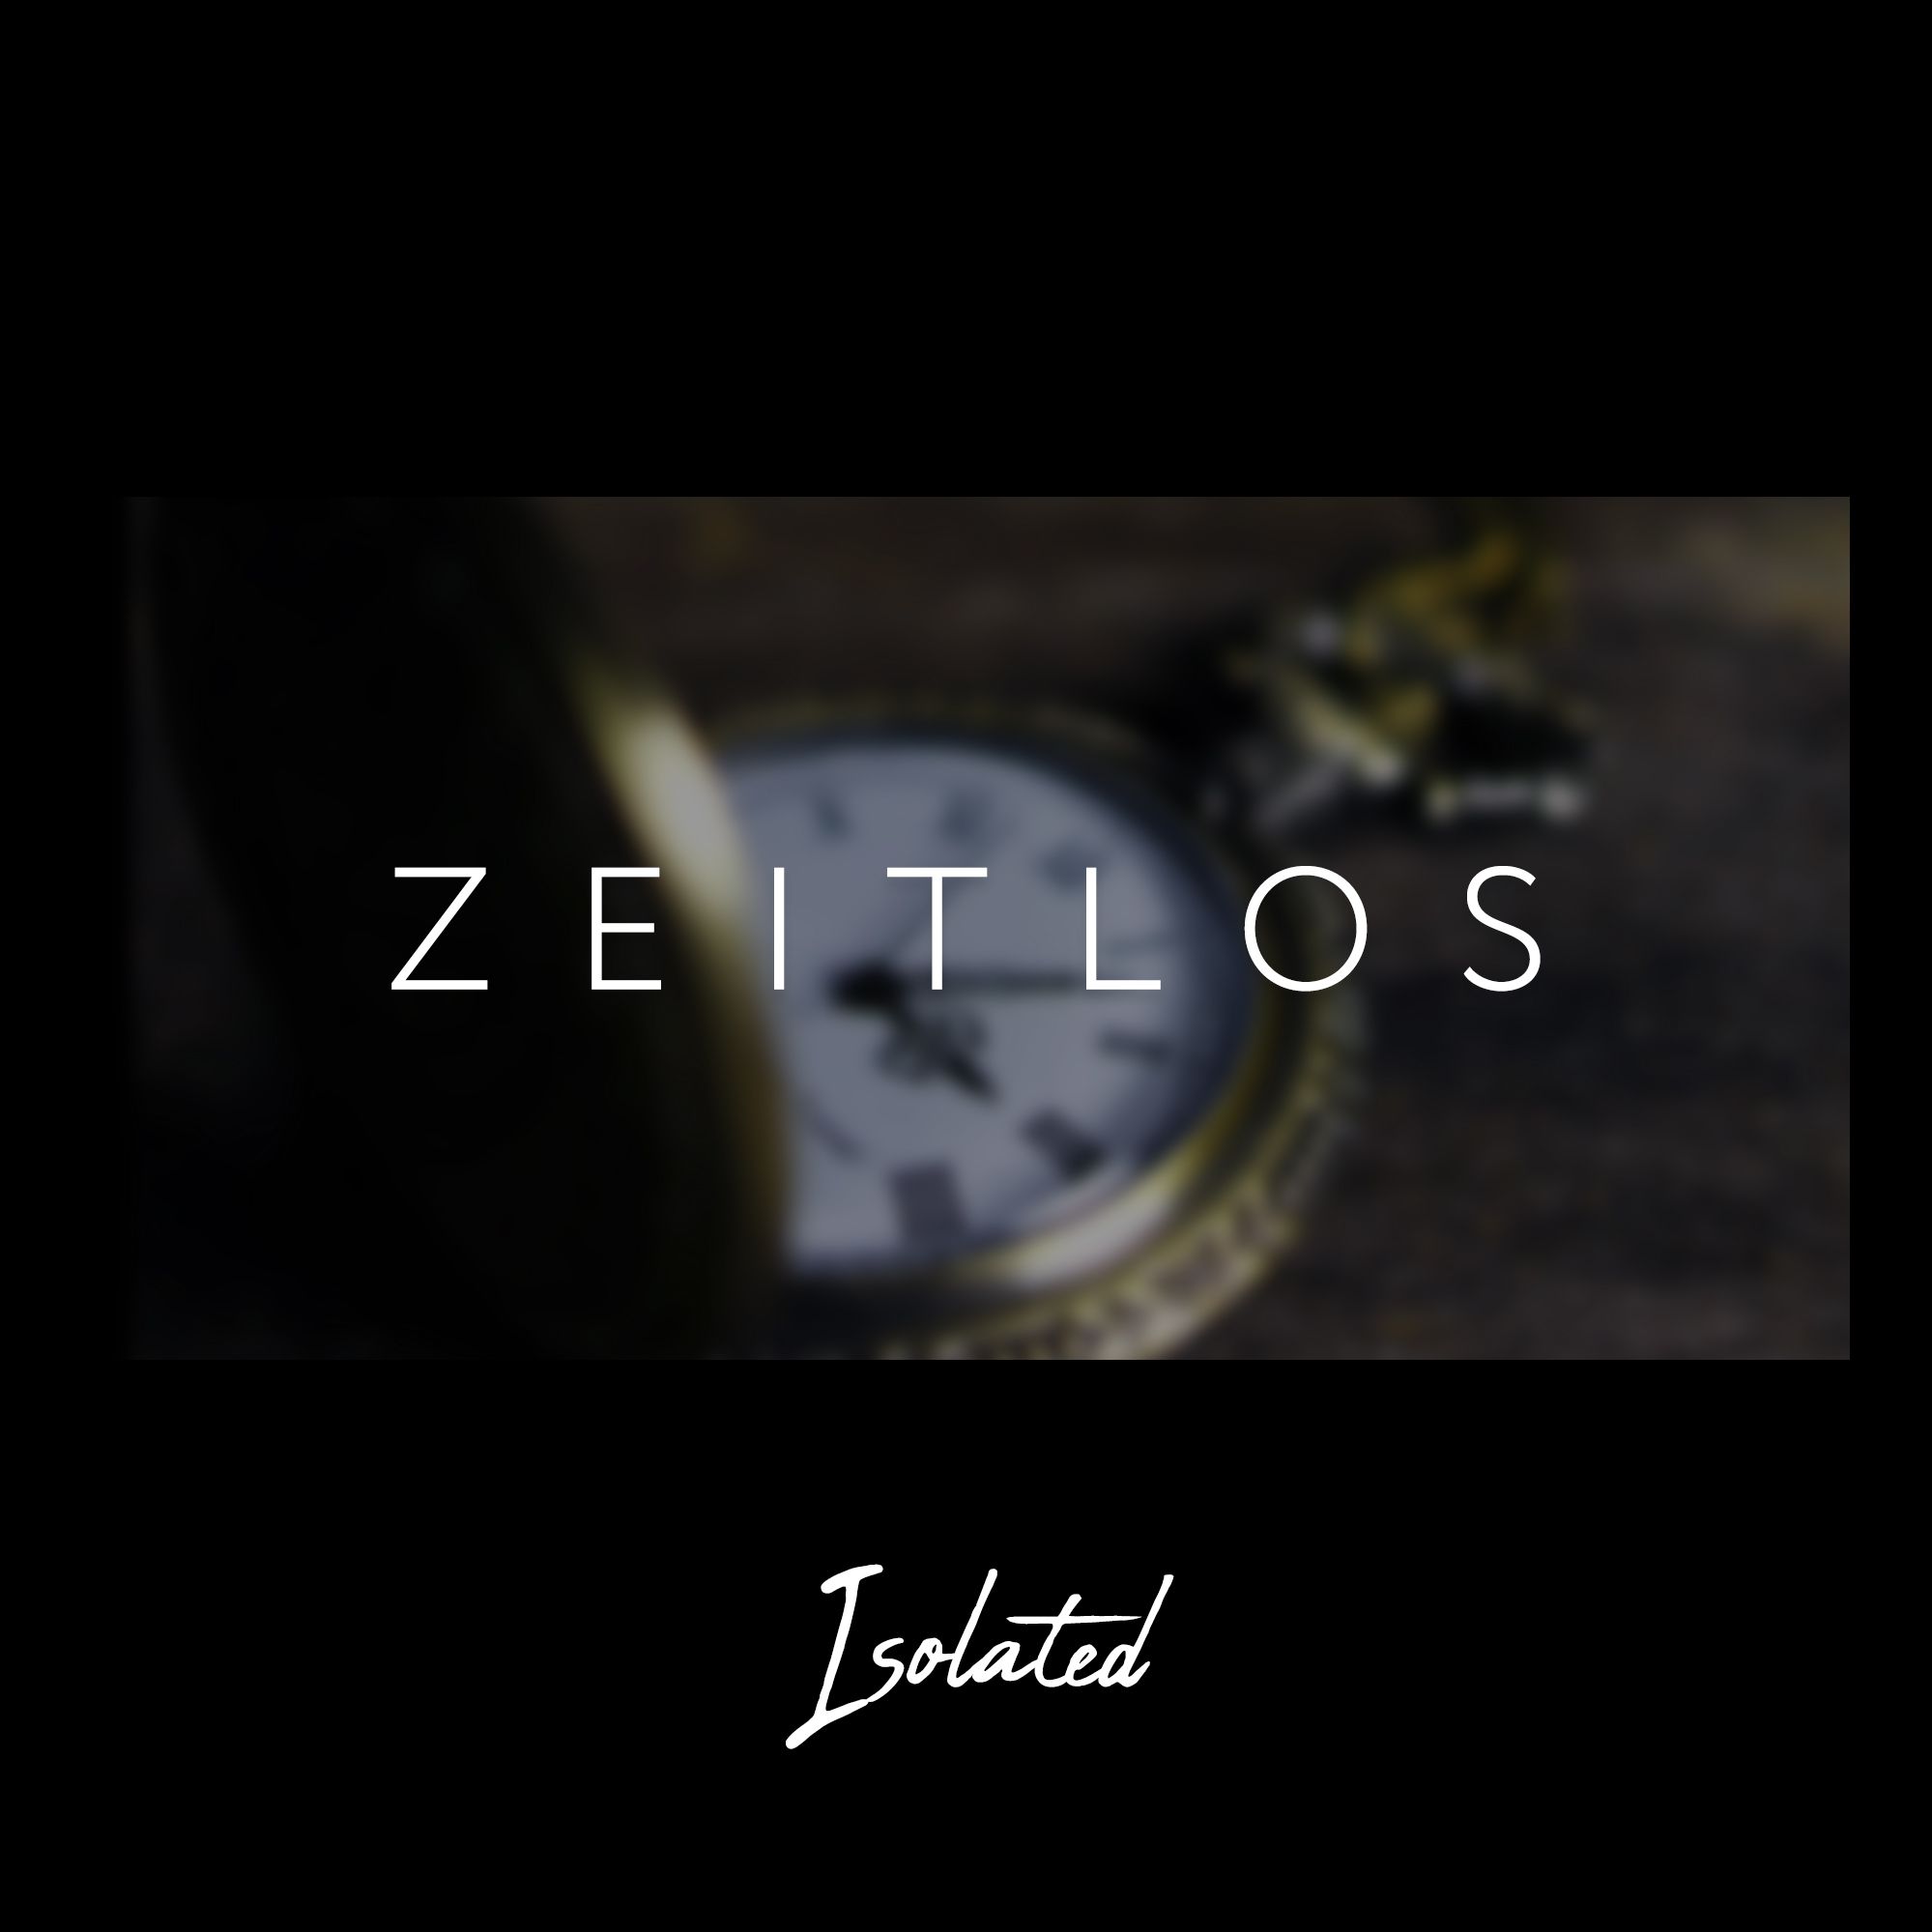 डाउनलोड करा Zeitlos